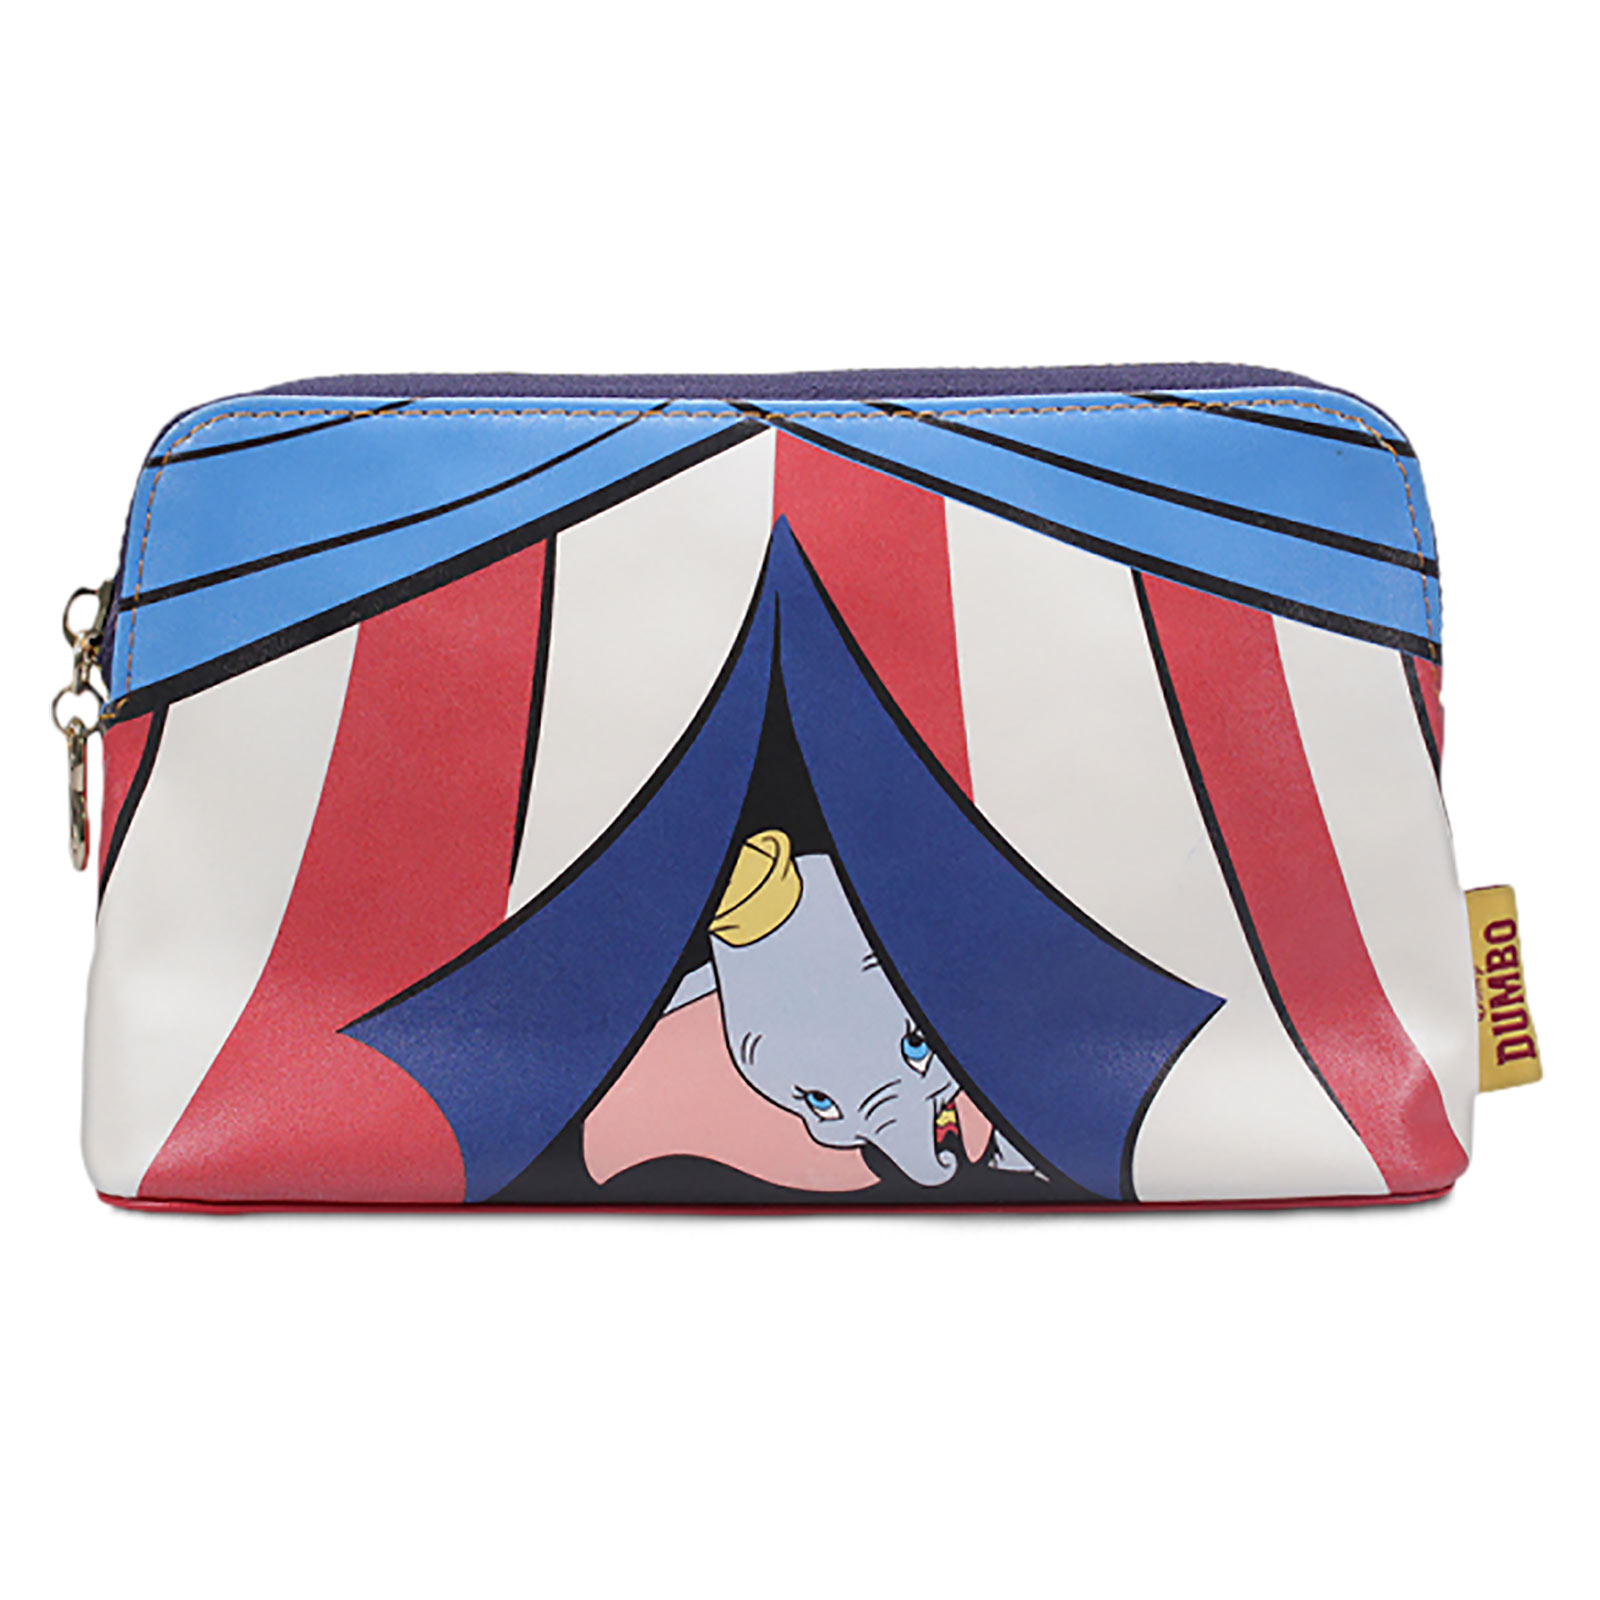 Dumbo - Circus Tent Cosmetic Bag